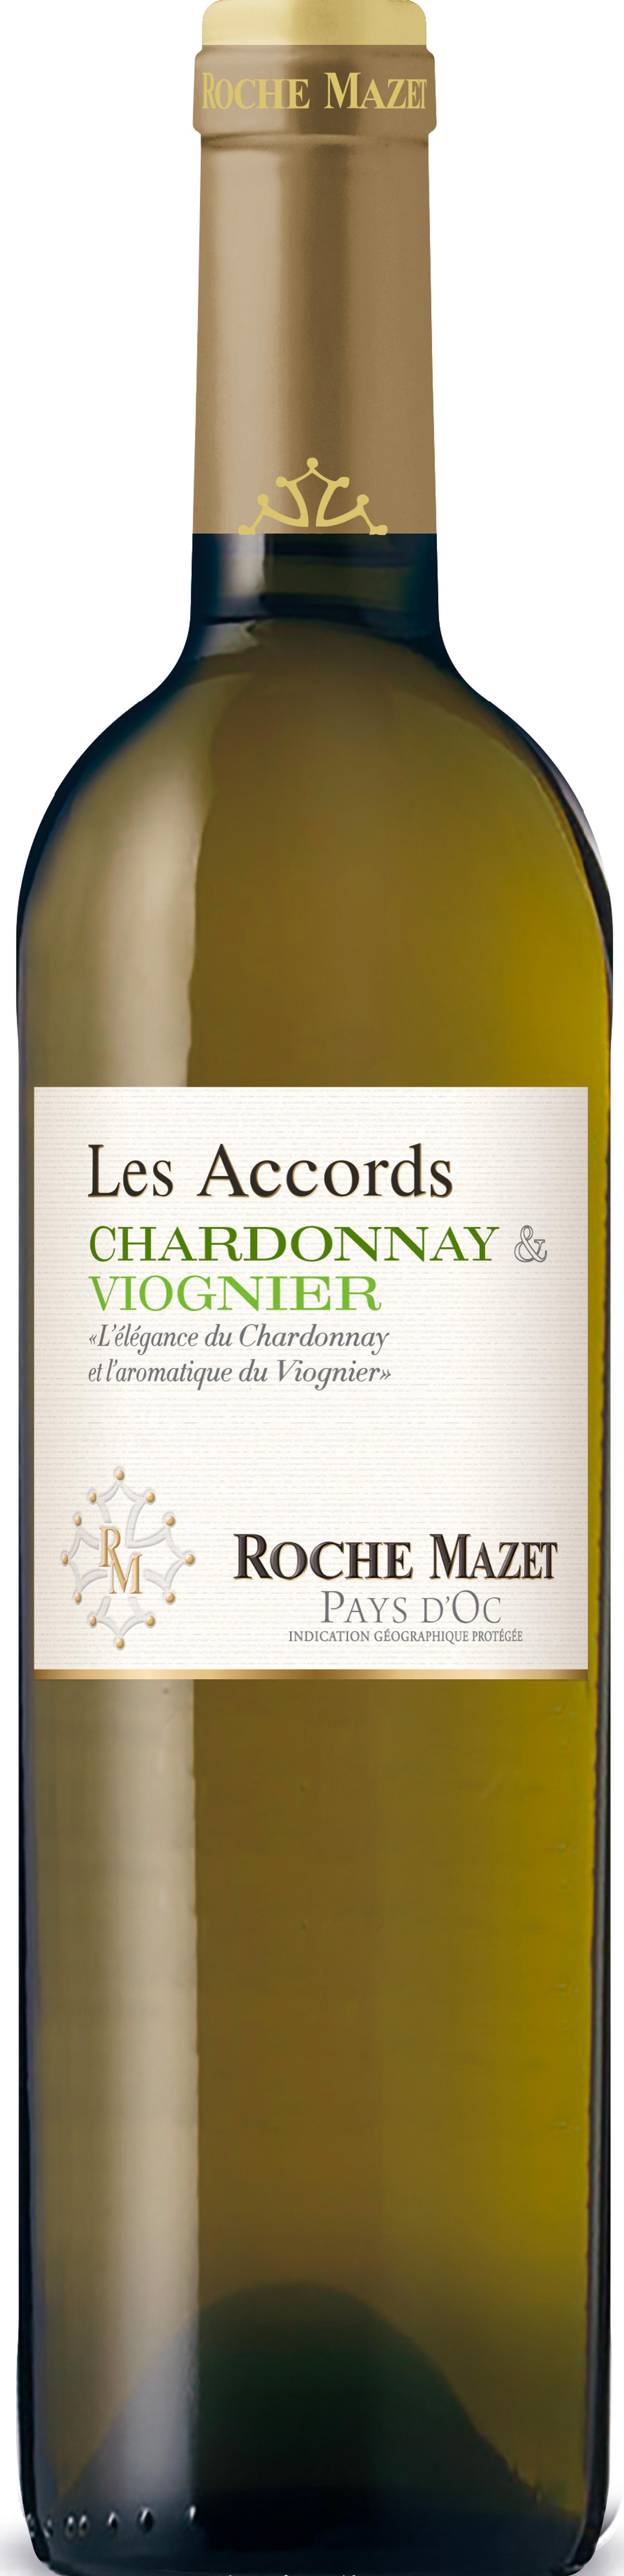 Les Accords Chardonnay & Viognier